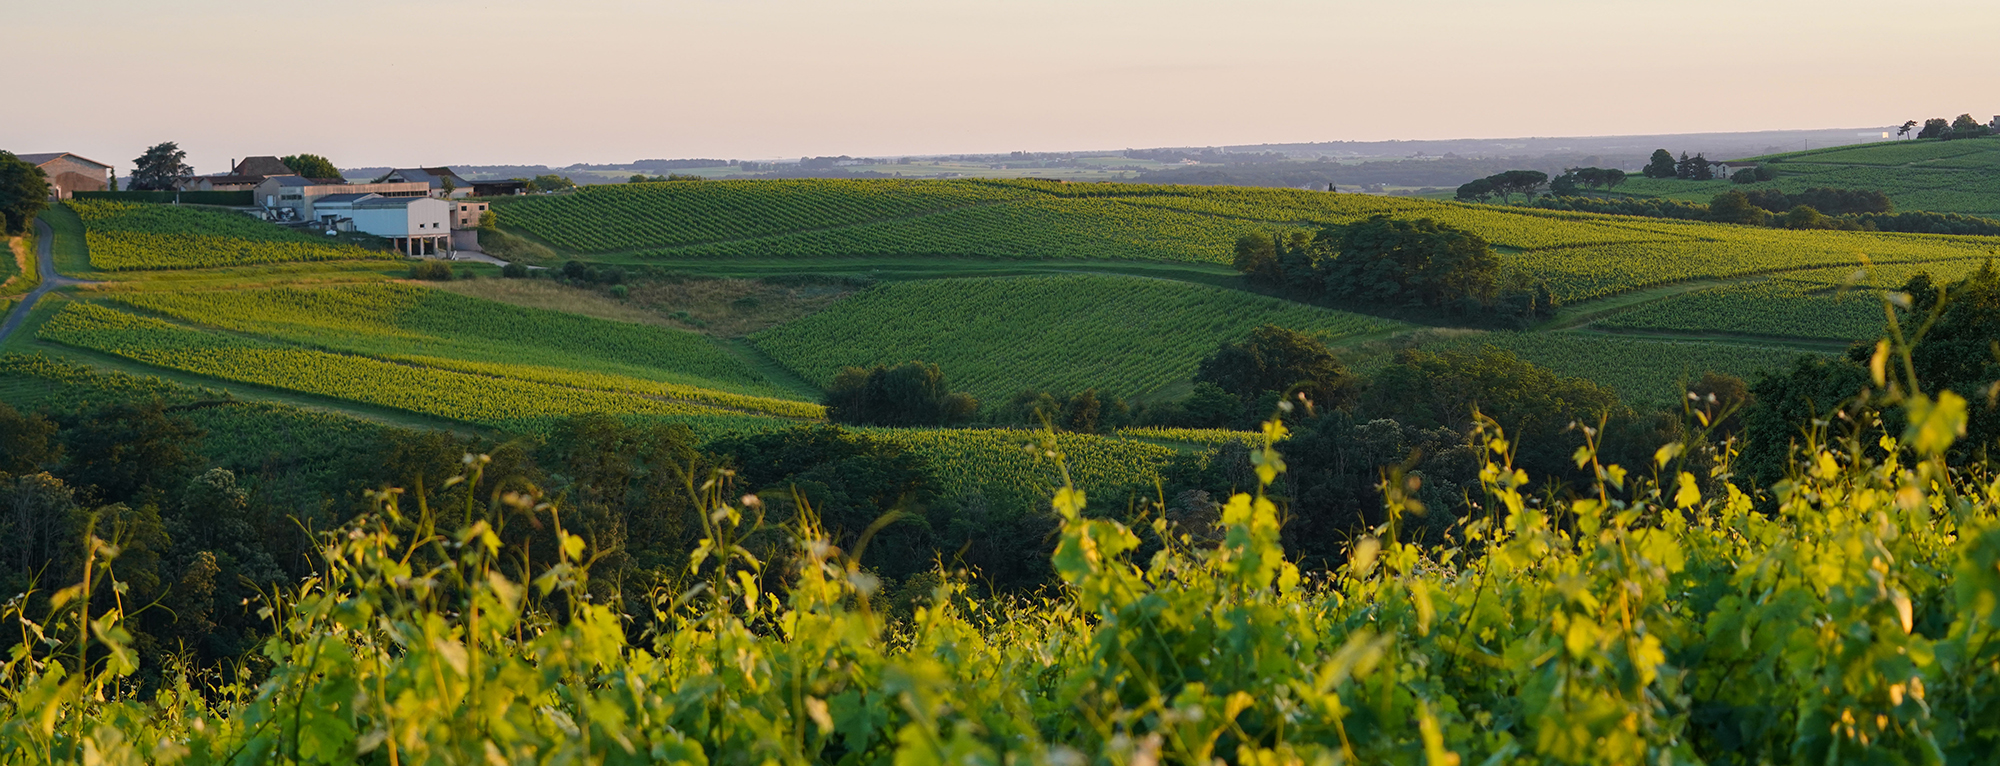 Les vins de Bordeaux & le développement durable